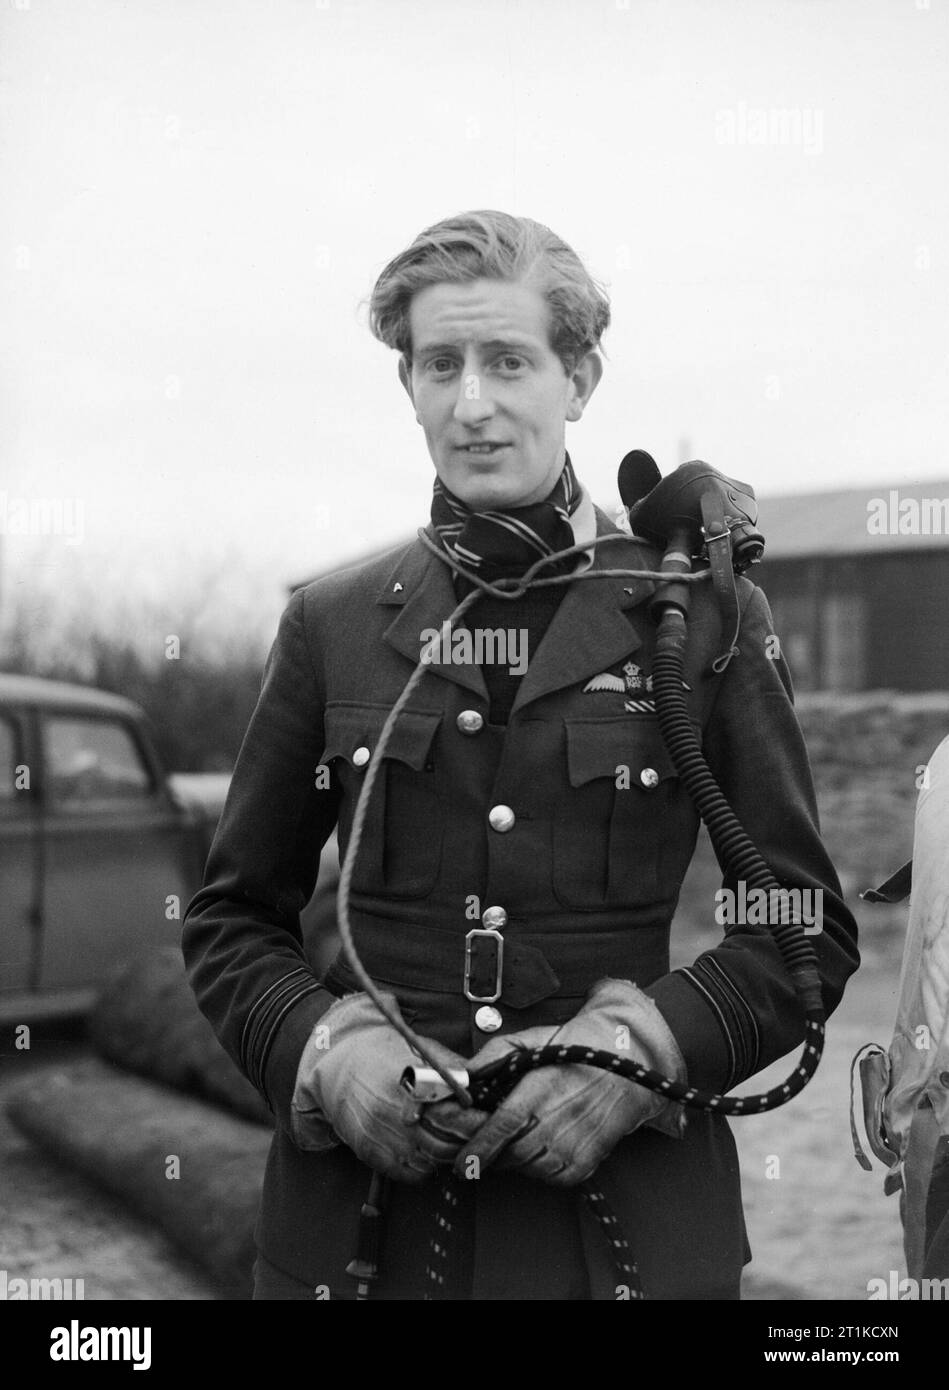 Squadron Leader Hugh "Cocky" Dundas, CO von Nr. 56 Squadron RAF in Duxford, Cambridegshire, 2. Januar 1942. Squadron Leader H S L'Cocky' Dundas, Kommandierender Offizier der Nr. 56 Squadron RAF, in Duxford, Cambridegshire. Dundas abgeschossen Mindestens 6 feindliche Flugzeuge im Vereinigten Königreich zwischen 1940 und 1943. Übernahm er Befehl des 56. Geschwaders im Dezember 1941, und 1943 wurde er in die Malta veröffentlicht Nr. 244 Wing RAF durch die sizilianische und italienische Kampagnen zu führen. Im Jahre 1944 wurde er einer der jüngsten Gruppe Kapitäne in der RAF und, am Ende des Krieges hatte seine Gesamtmenge von Siege auf 11 erhöht. Stockfoto